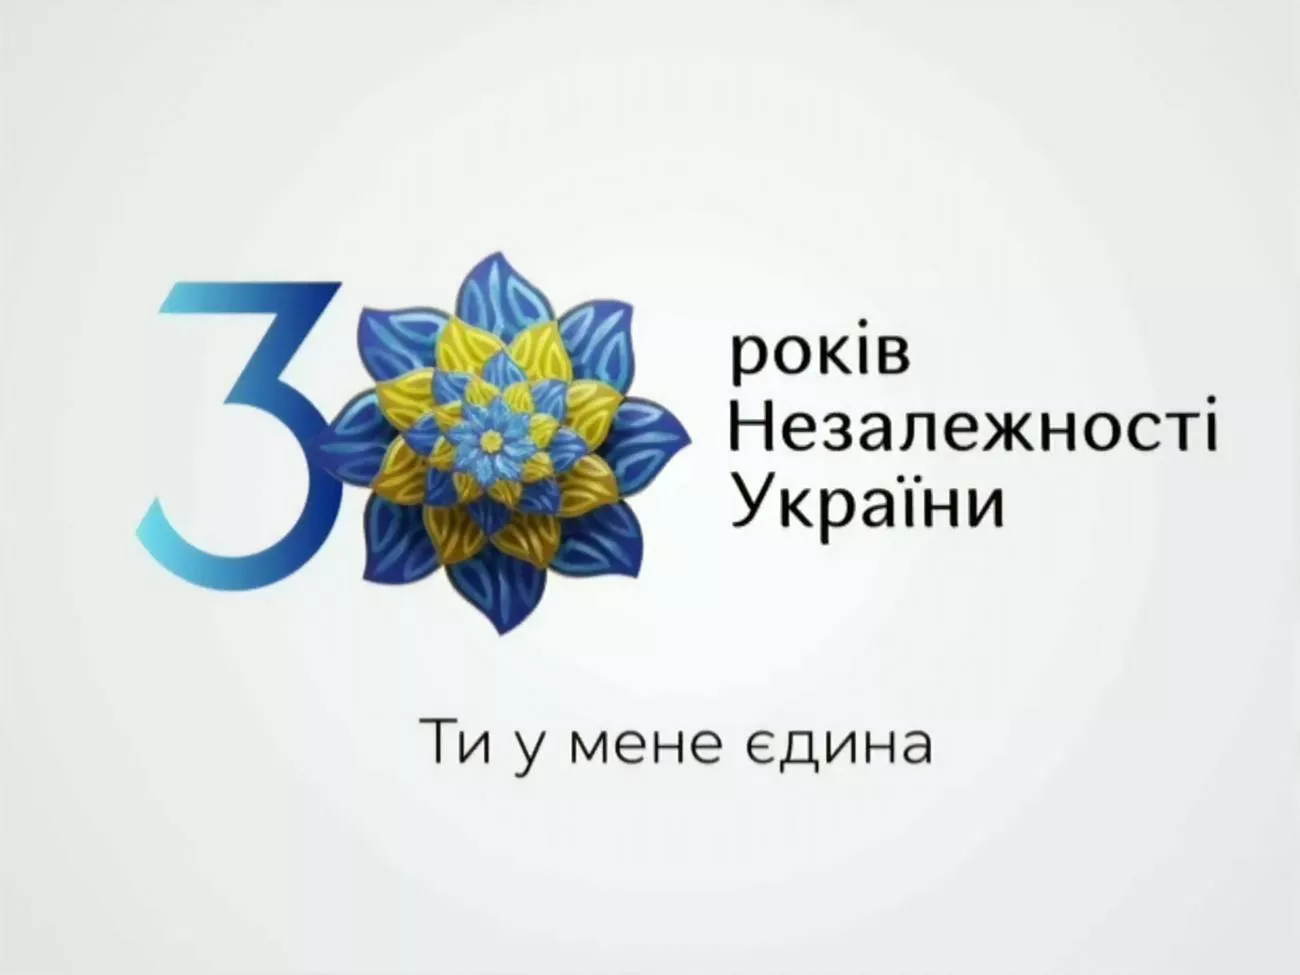 В інтерв'ю "Сьогодні" президент розповів, що він сам вкладає в зміст слогану, обраного до святкування 30-річчя незалежності України